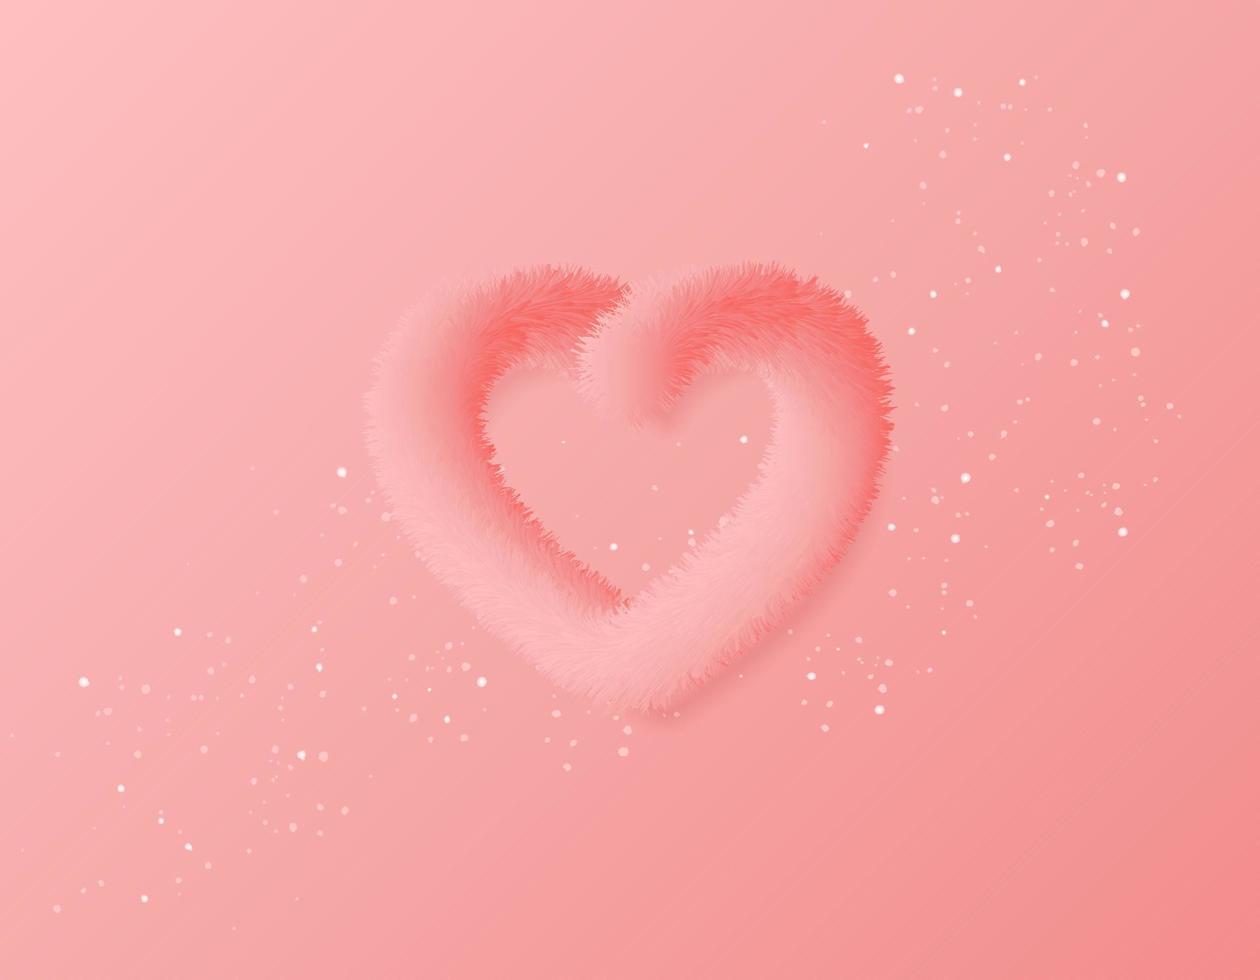 modernes Happy Valentine's Day Poster oder Cover. schönes Cover mit flauschigem 3D-Herz auf rosa Hintergrund. Vektor-Illustration. Vektor-Illustration vektor